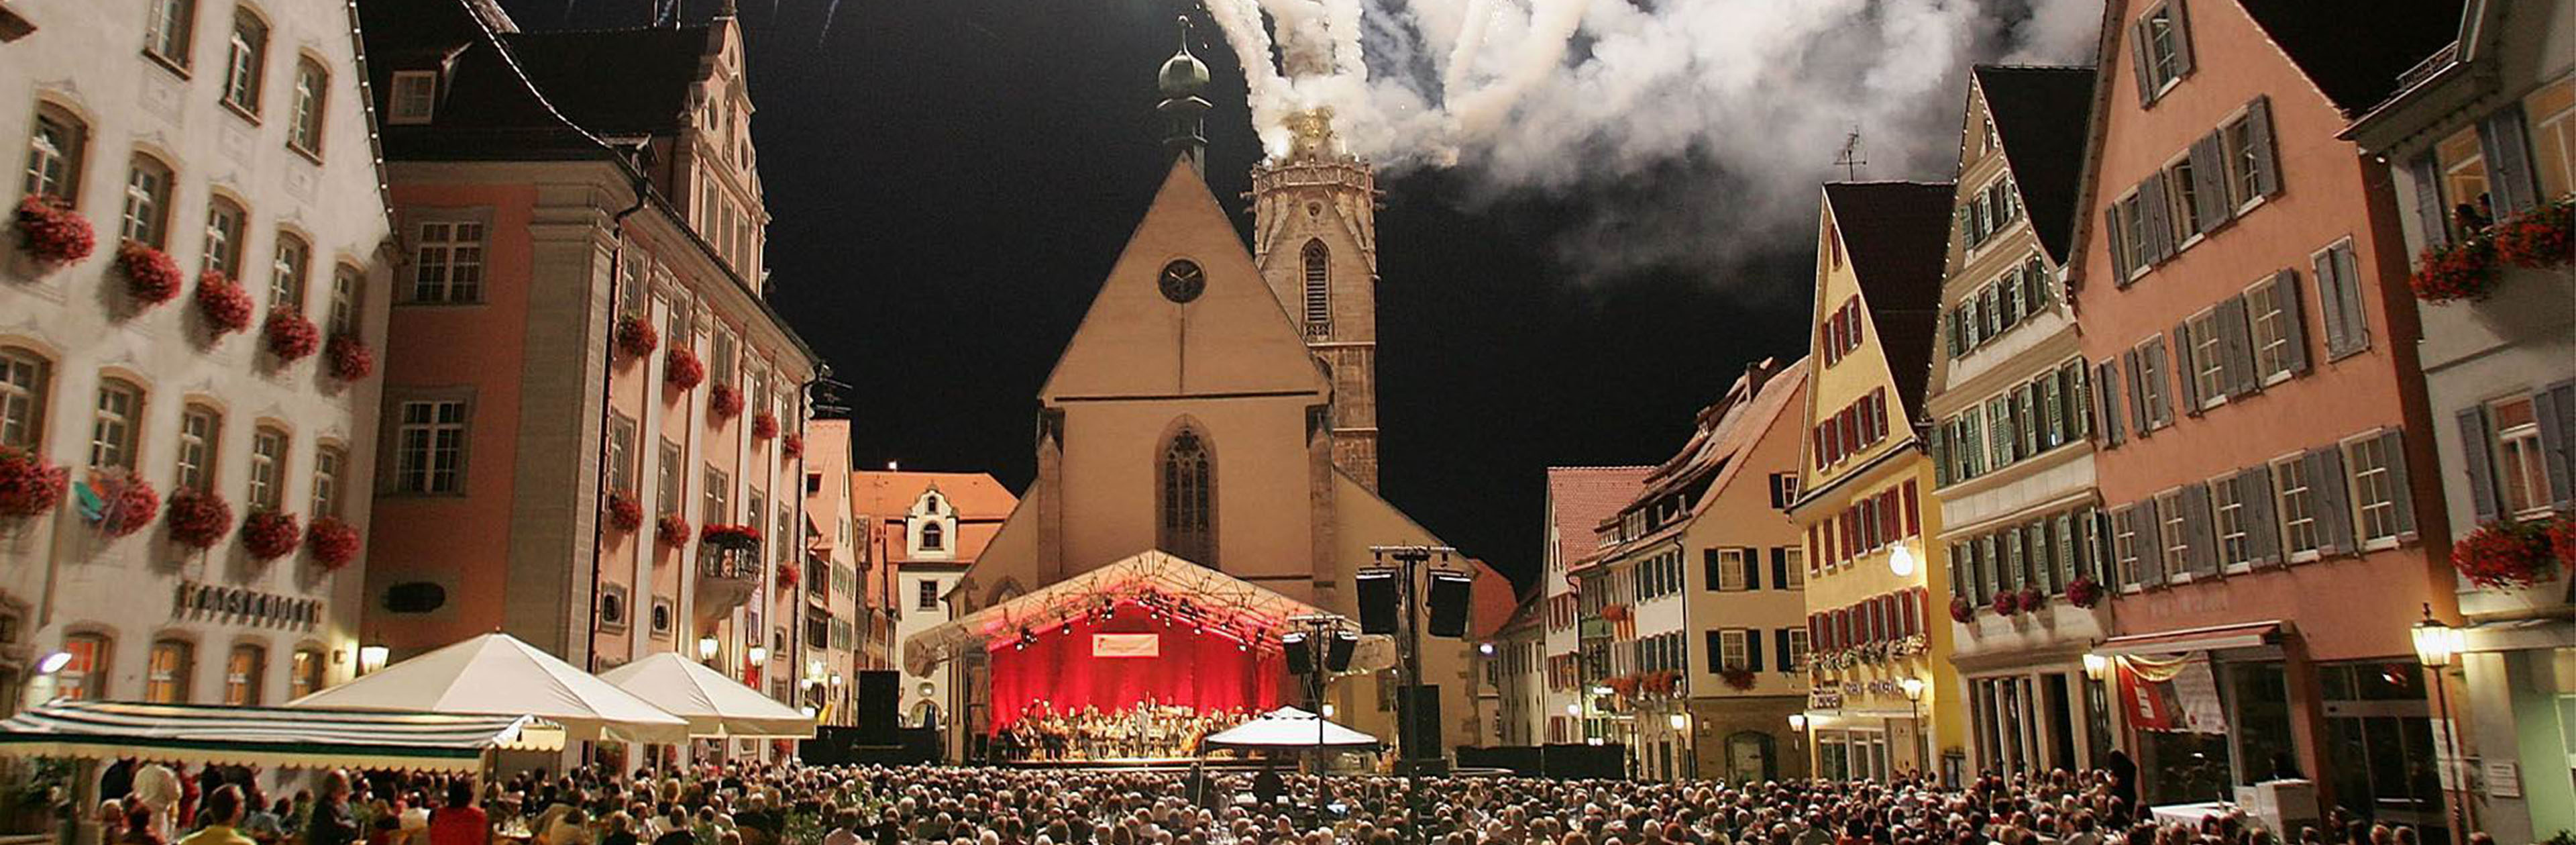 Veranstaltung mit Bühne auf dem Marktplatz und Feuerwerk auf dem Dom